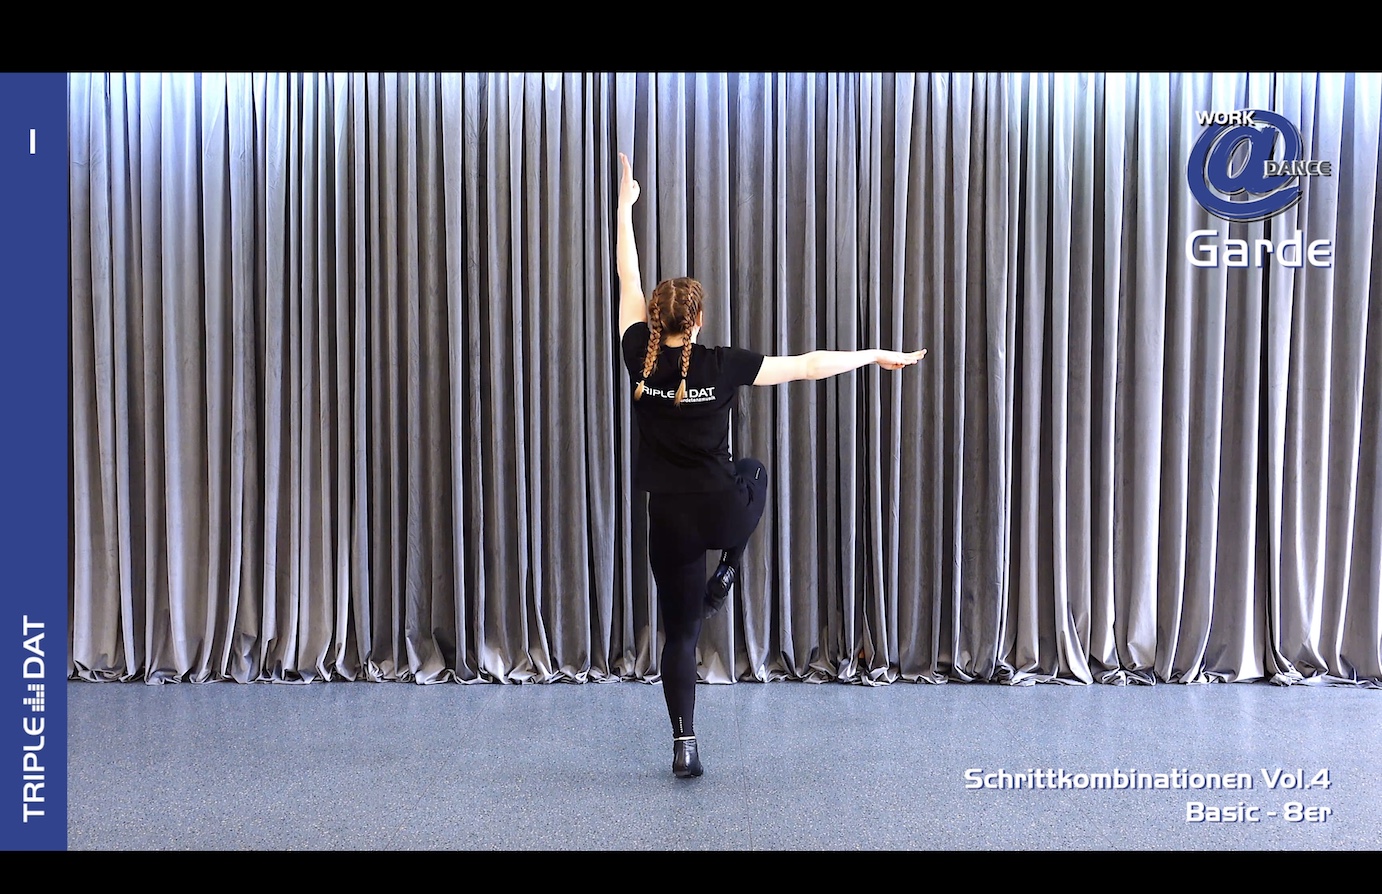 Work@Dance Garde Schrittkombinationen 04 - Basic